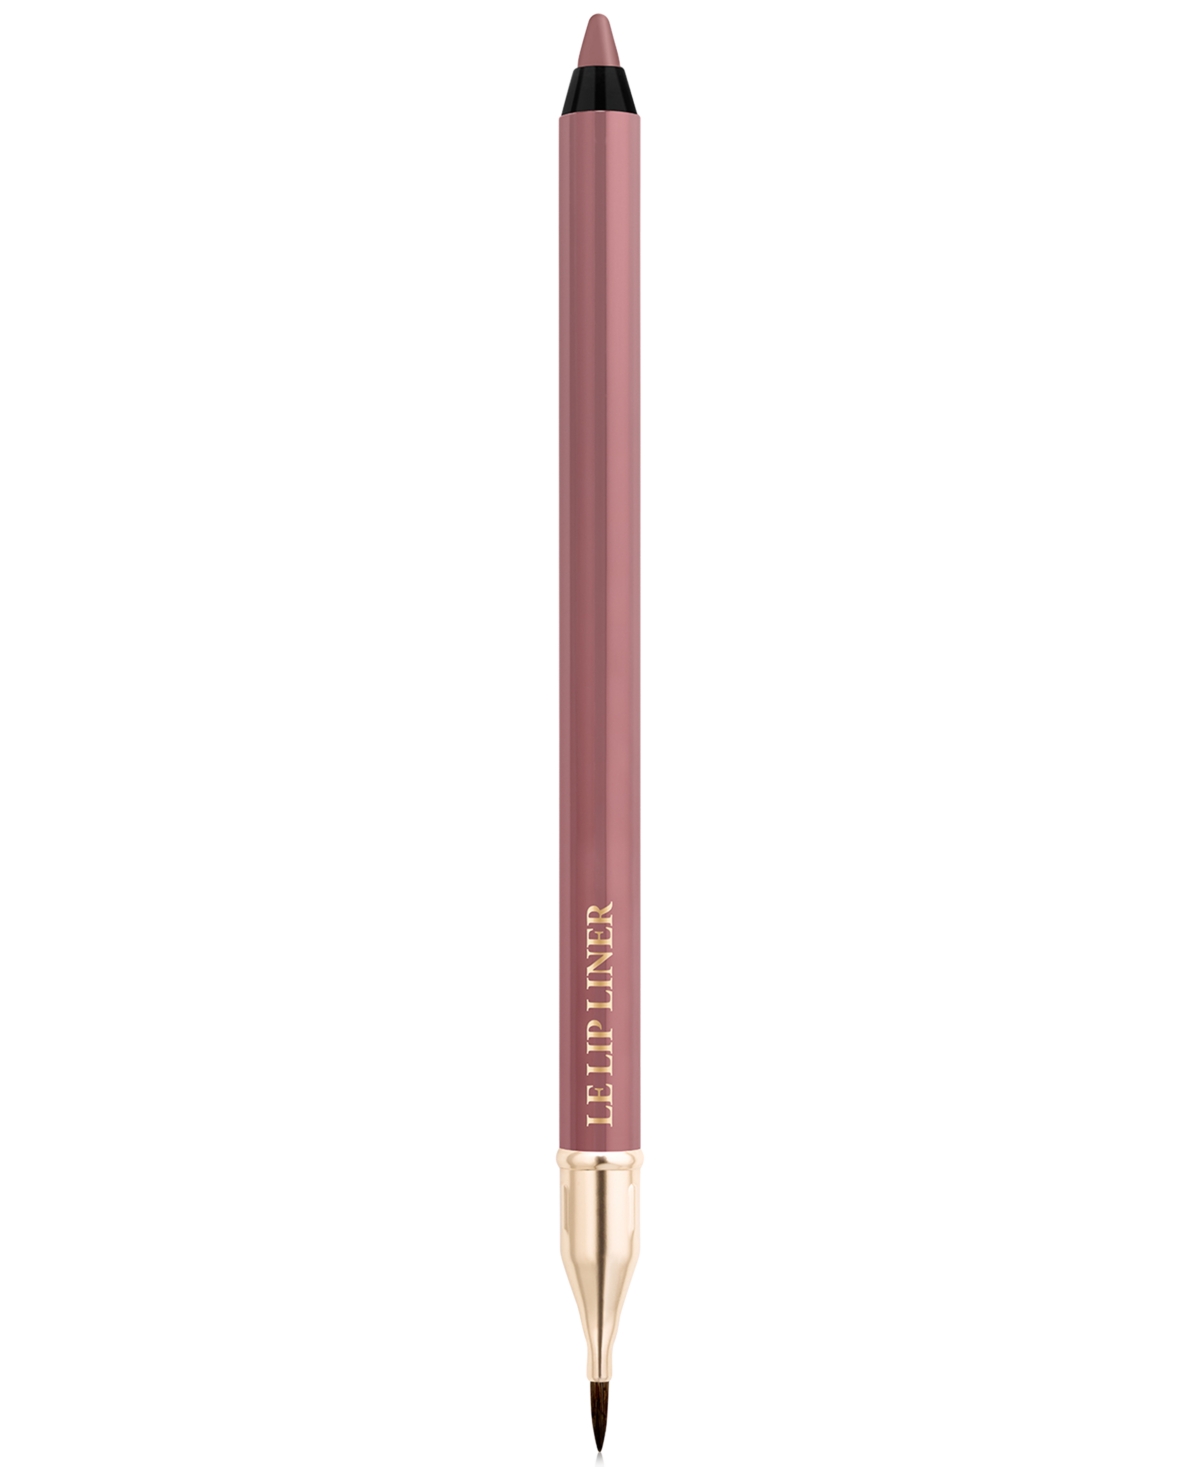 Lancôme Le Lipstique Dual Ended Lip Pencil With Brush, 0.04 oz In Natural Mauve